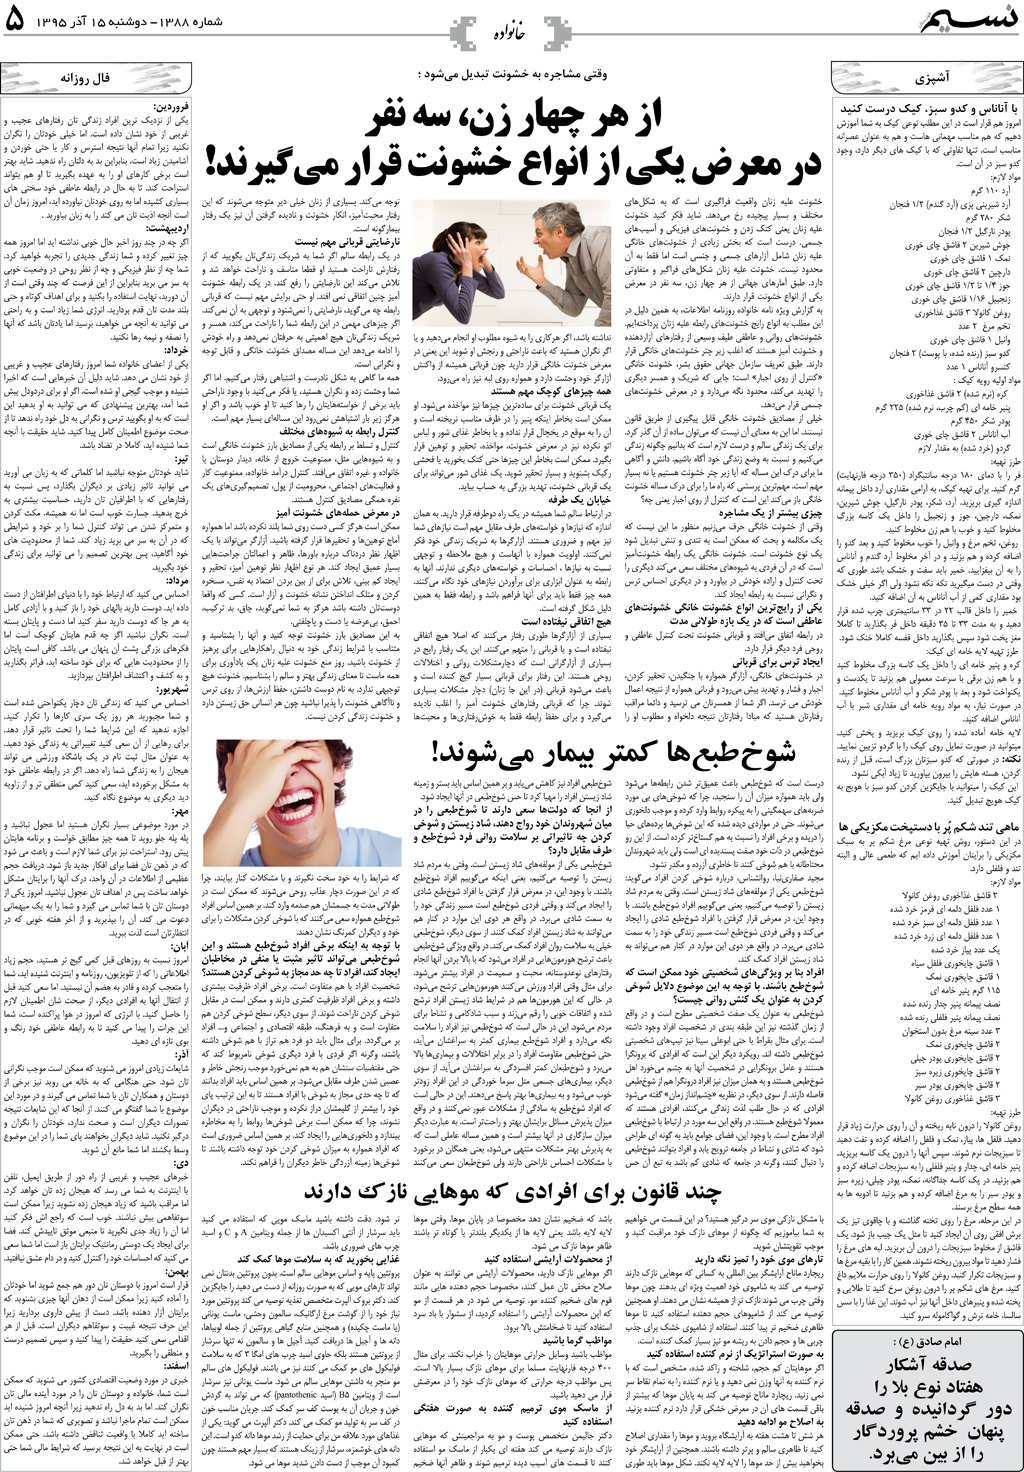 صفحه خانواده روزنامه نسیم شماره 1388